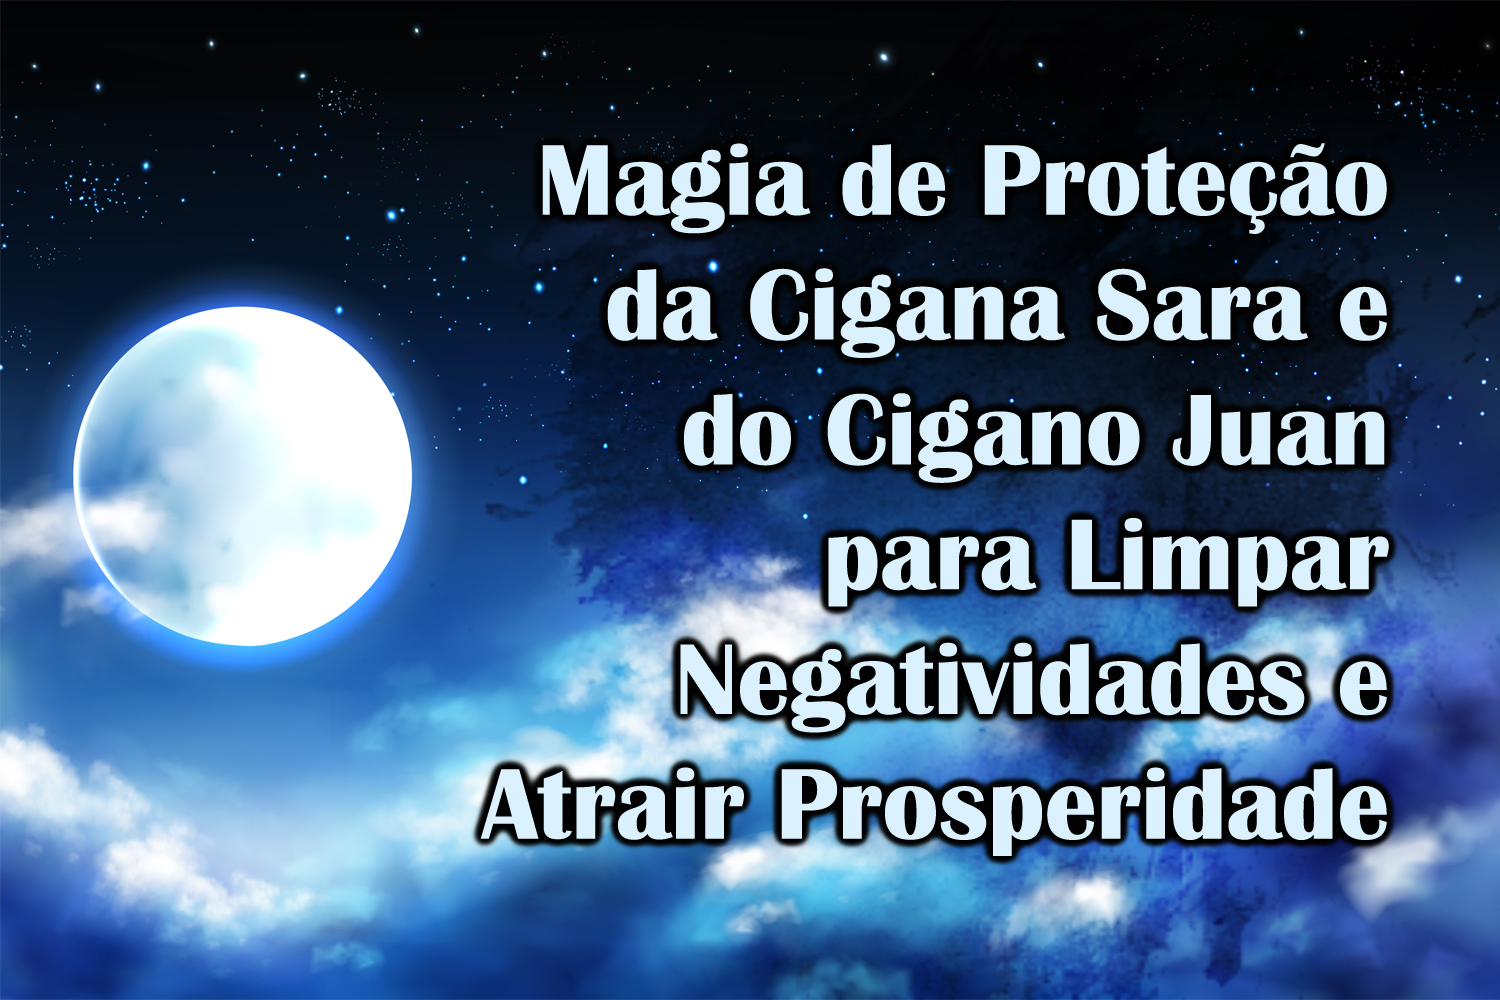 Magia de Proteção da Cigana Sara e do Cigano Juan para Limpar Negatividades e Atrair Prosperidade